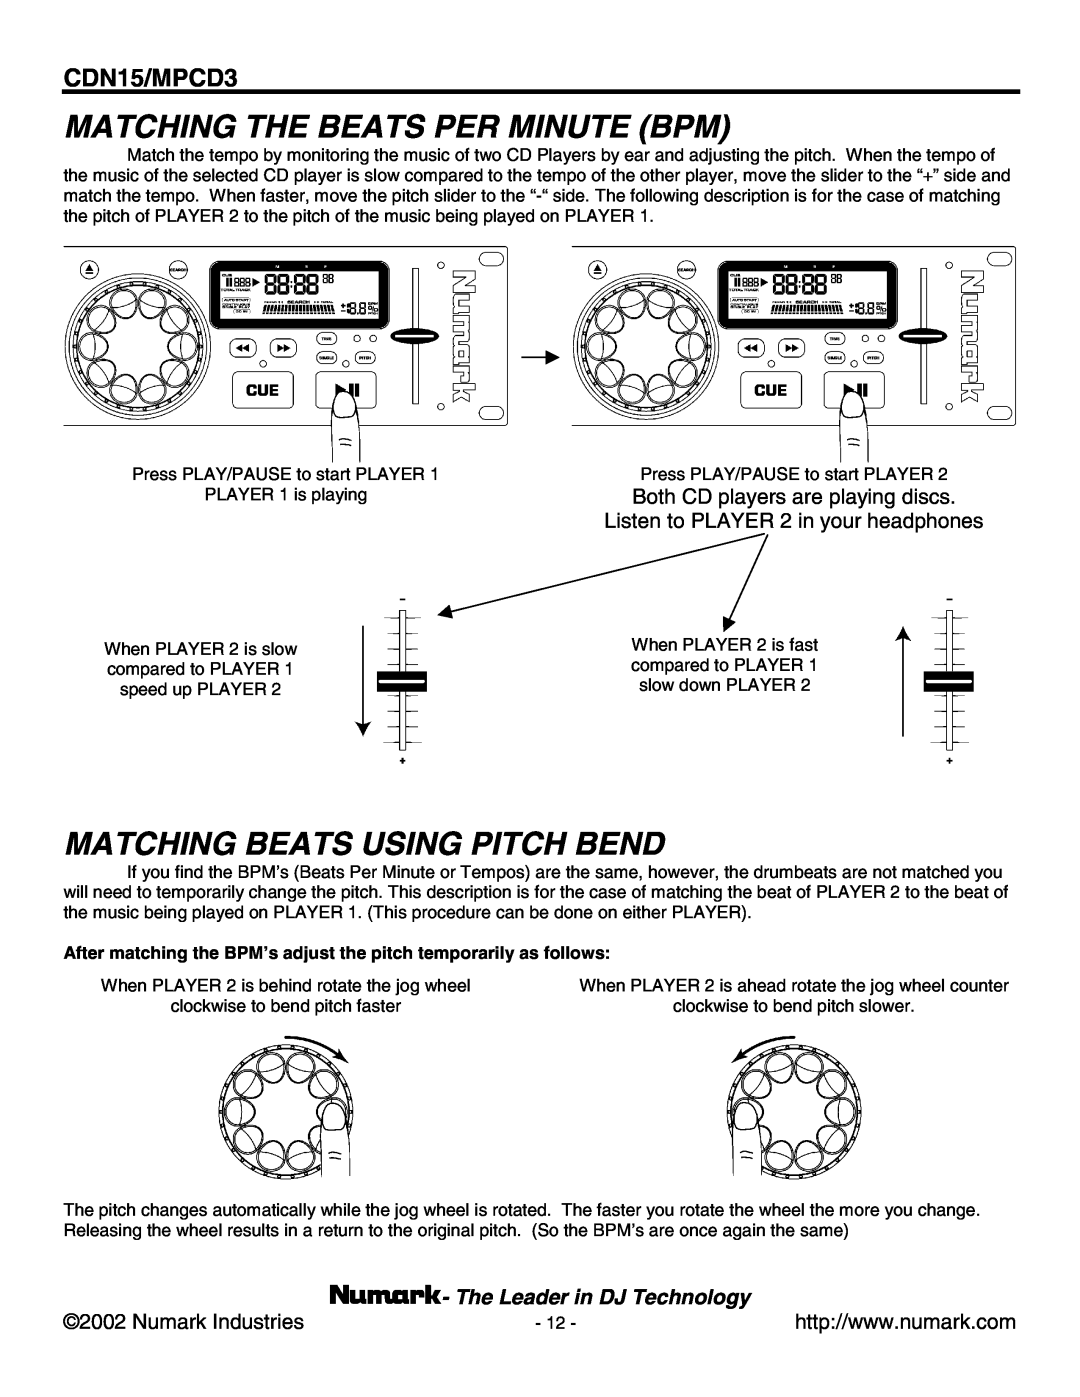 Numark Industries MPCD3, CDN15 Matching The Beats Per Minute Bpm, Matching Beats Using Pitch Bend, Numark Industries 